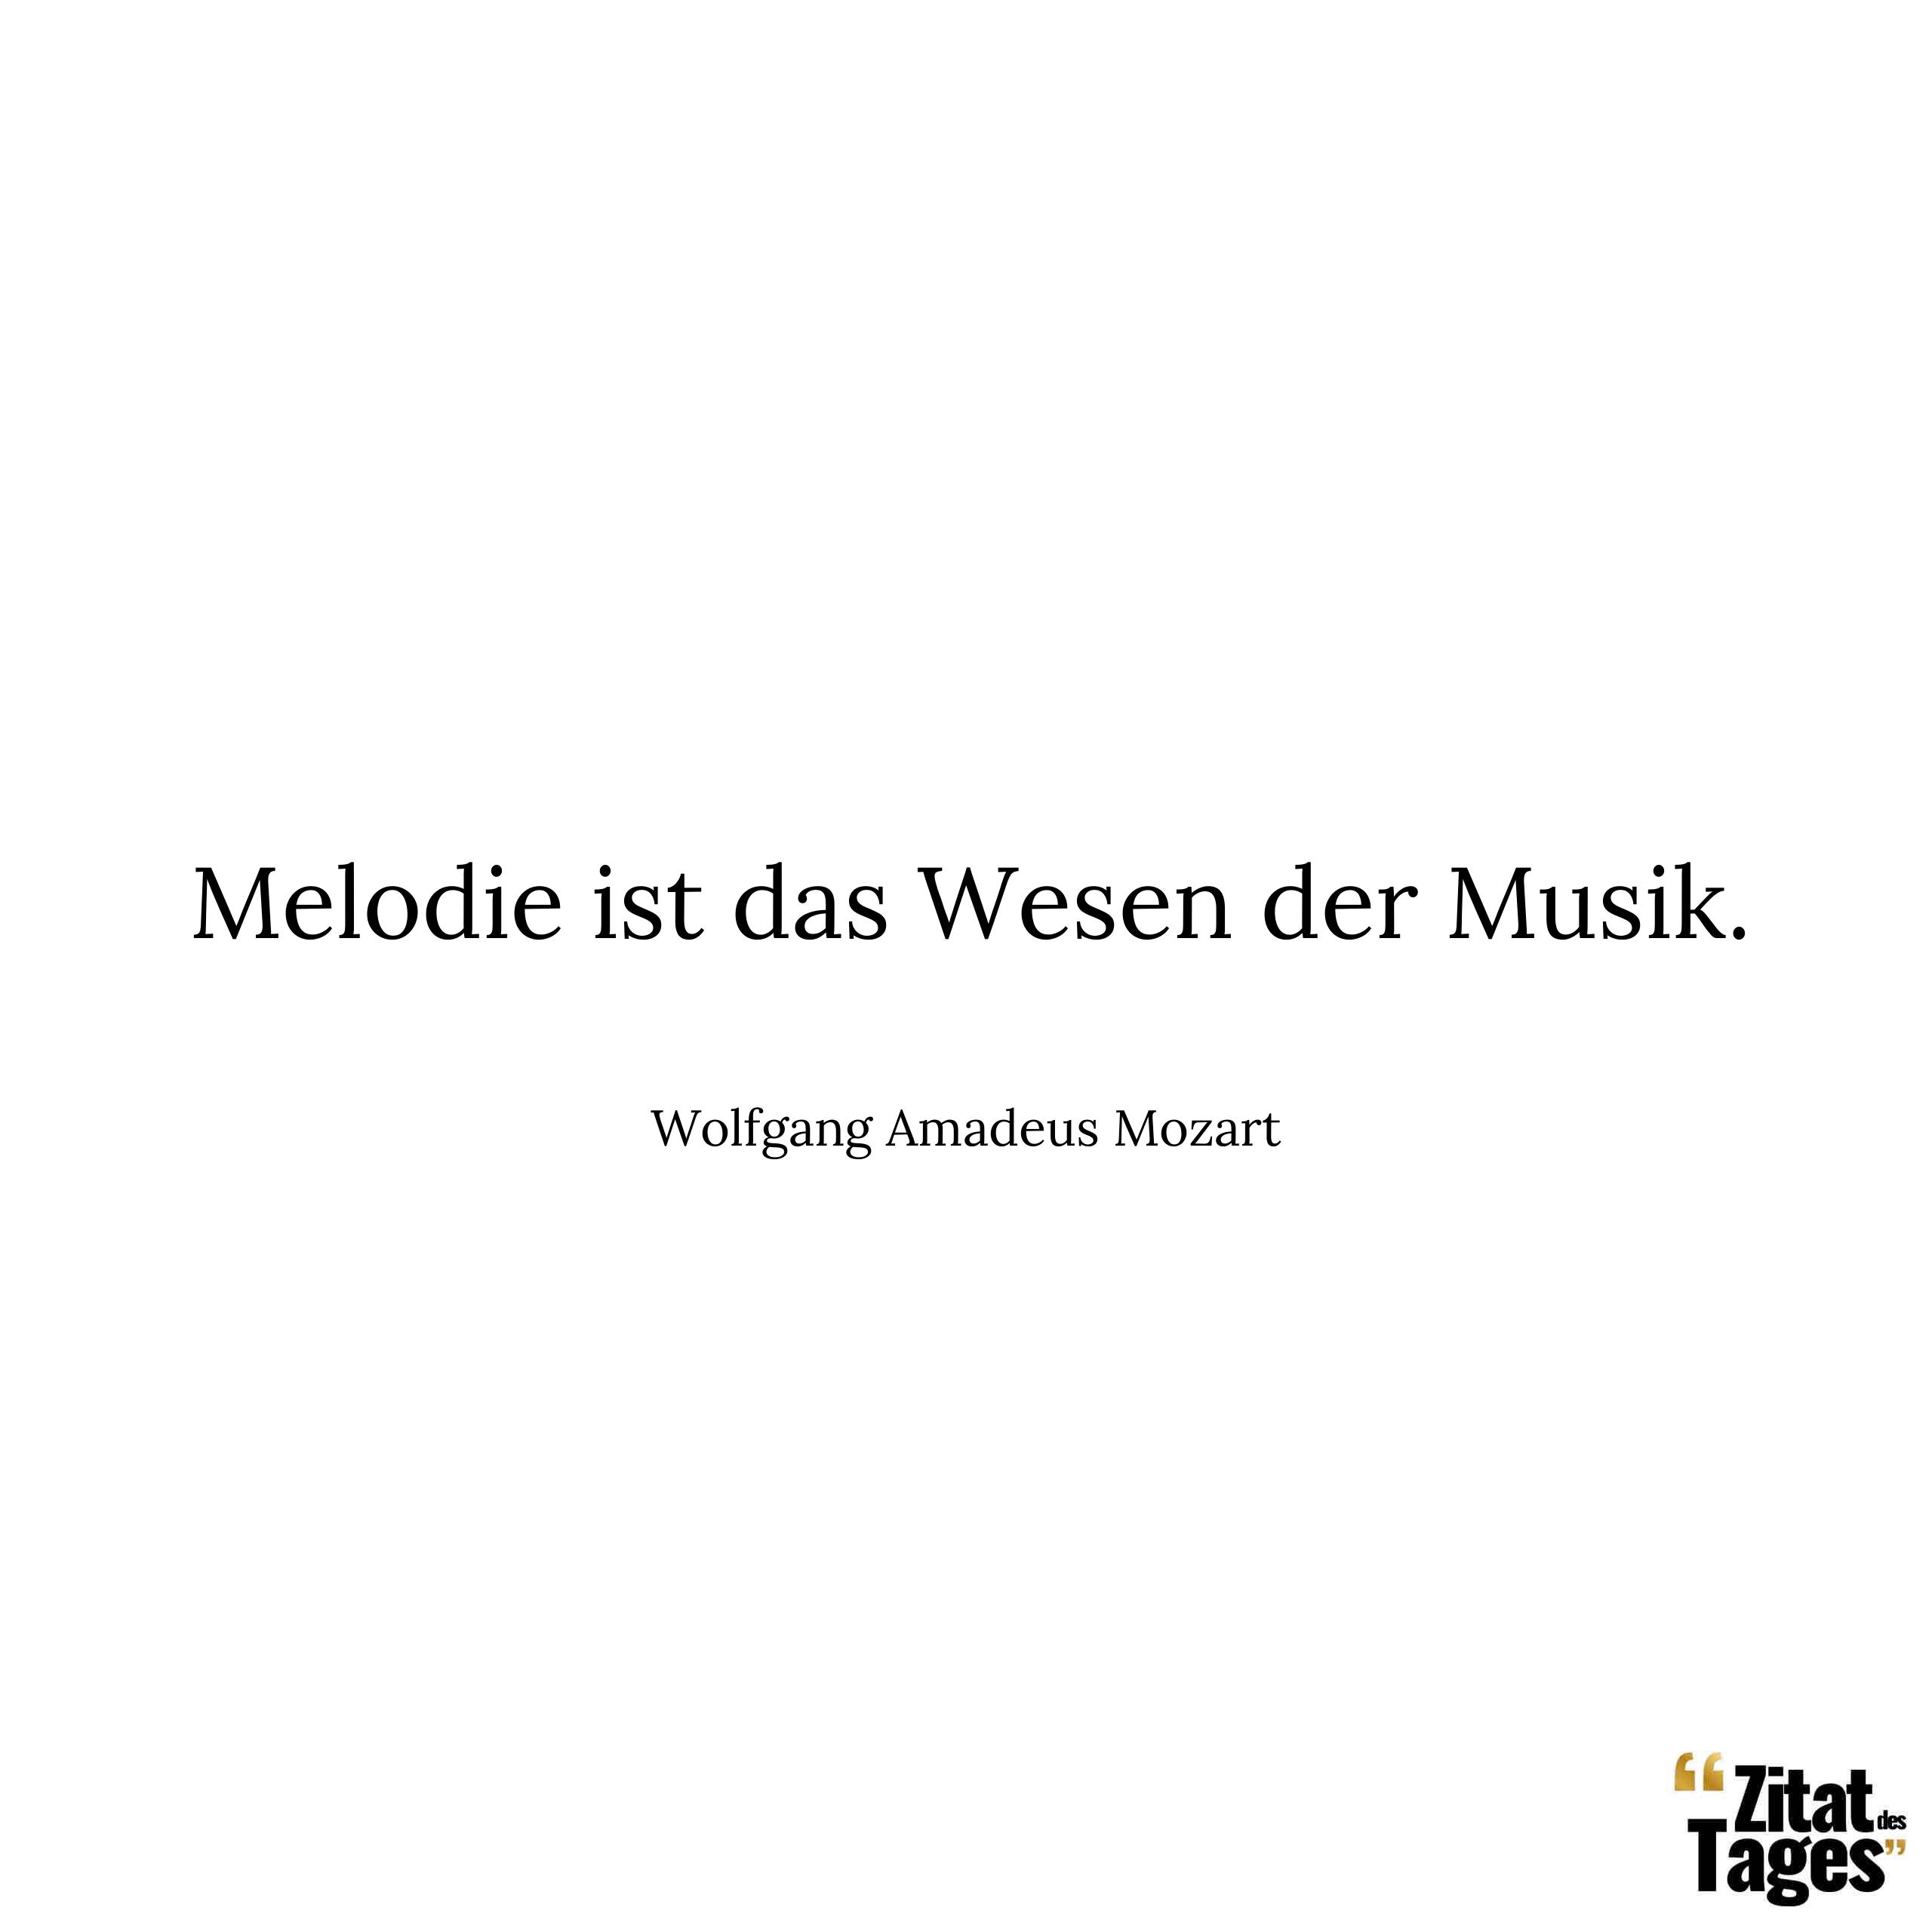 Melodie ist das Wesen der Musik. - Wolfgang Amadeus Mozart